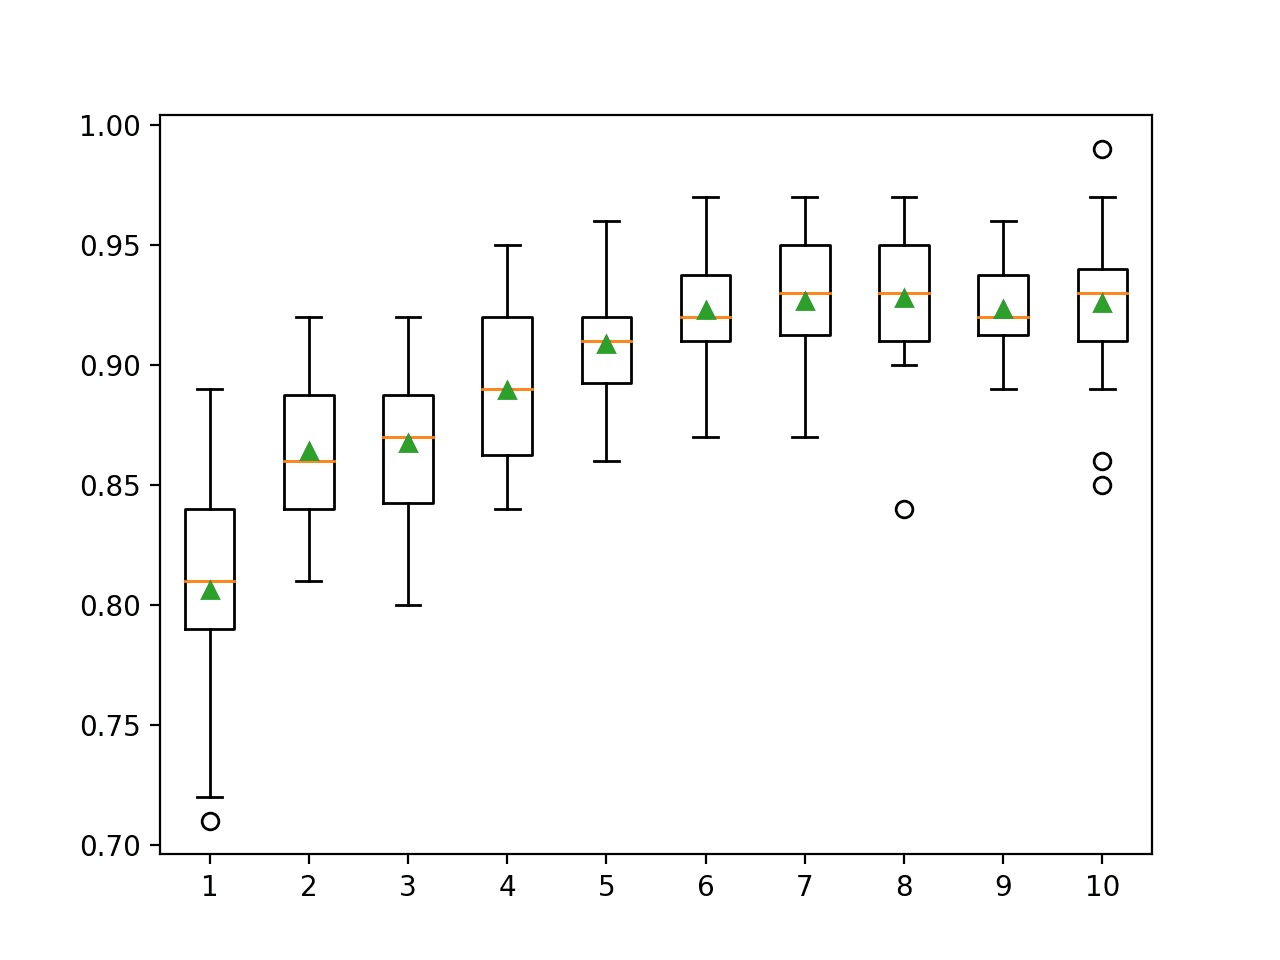 Box Plot of AdaBoost Ensemble Weak Learner Depth vs. Classification Accuracy